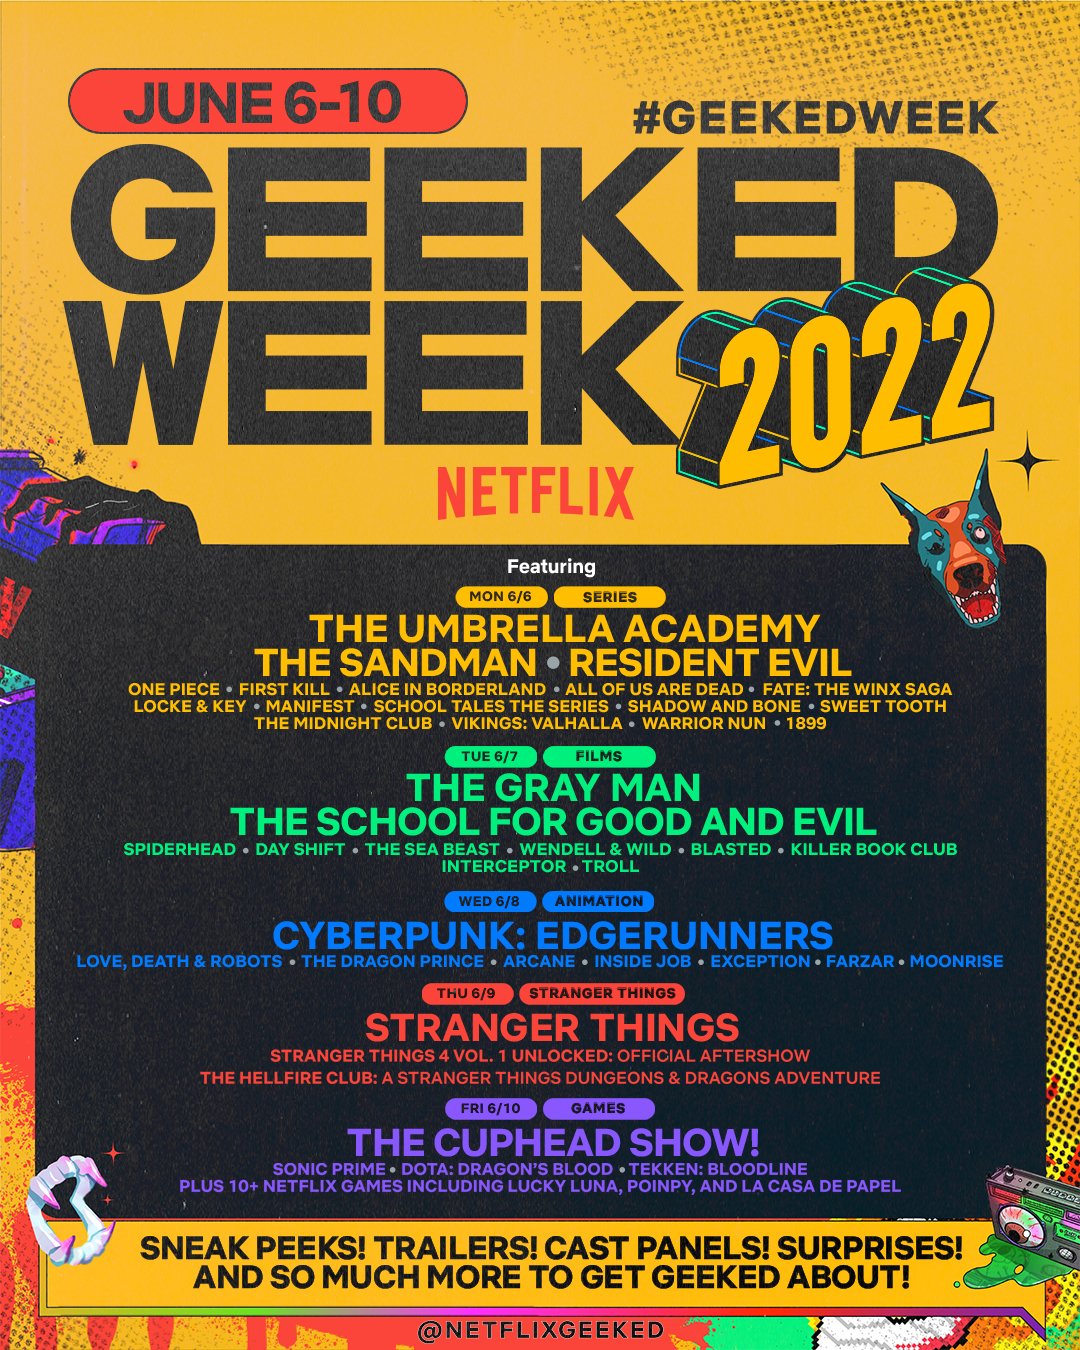 Cartelera de anuncios de la "Semana Geek" de Netflix. (Netflix)